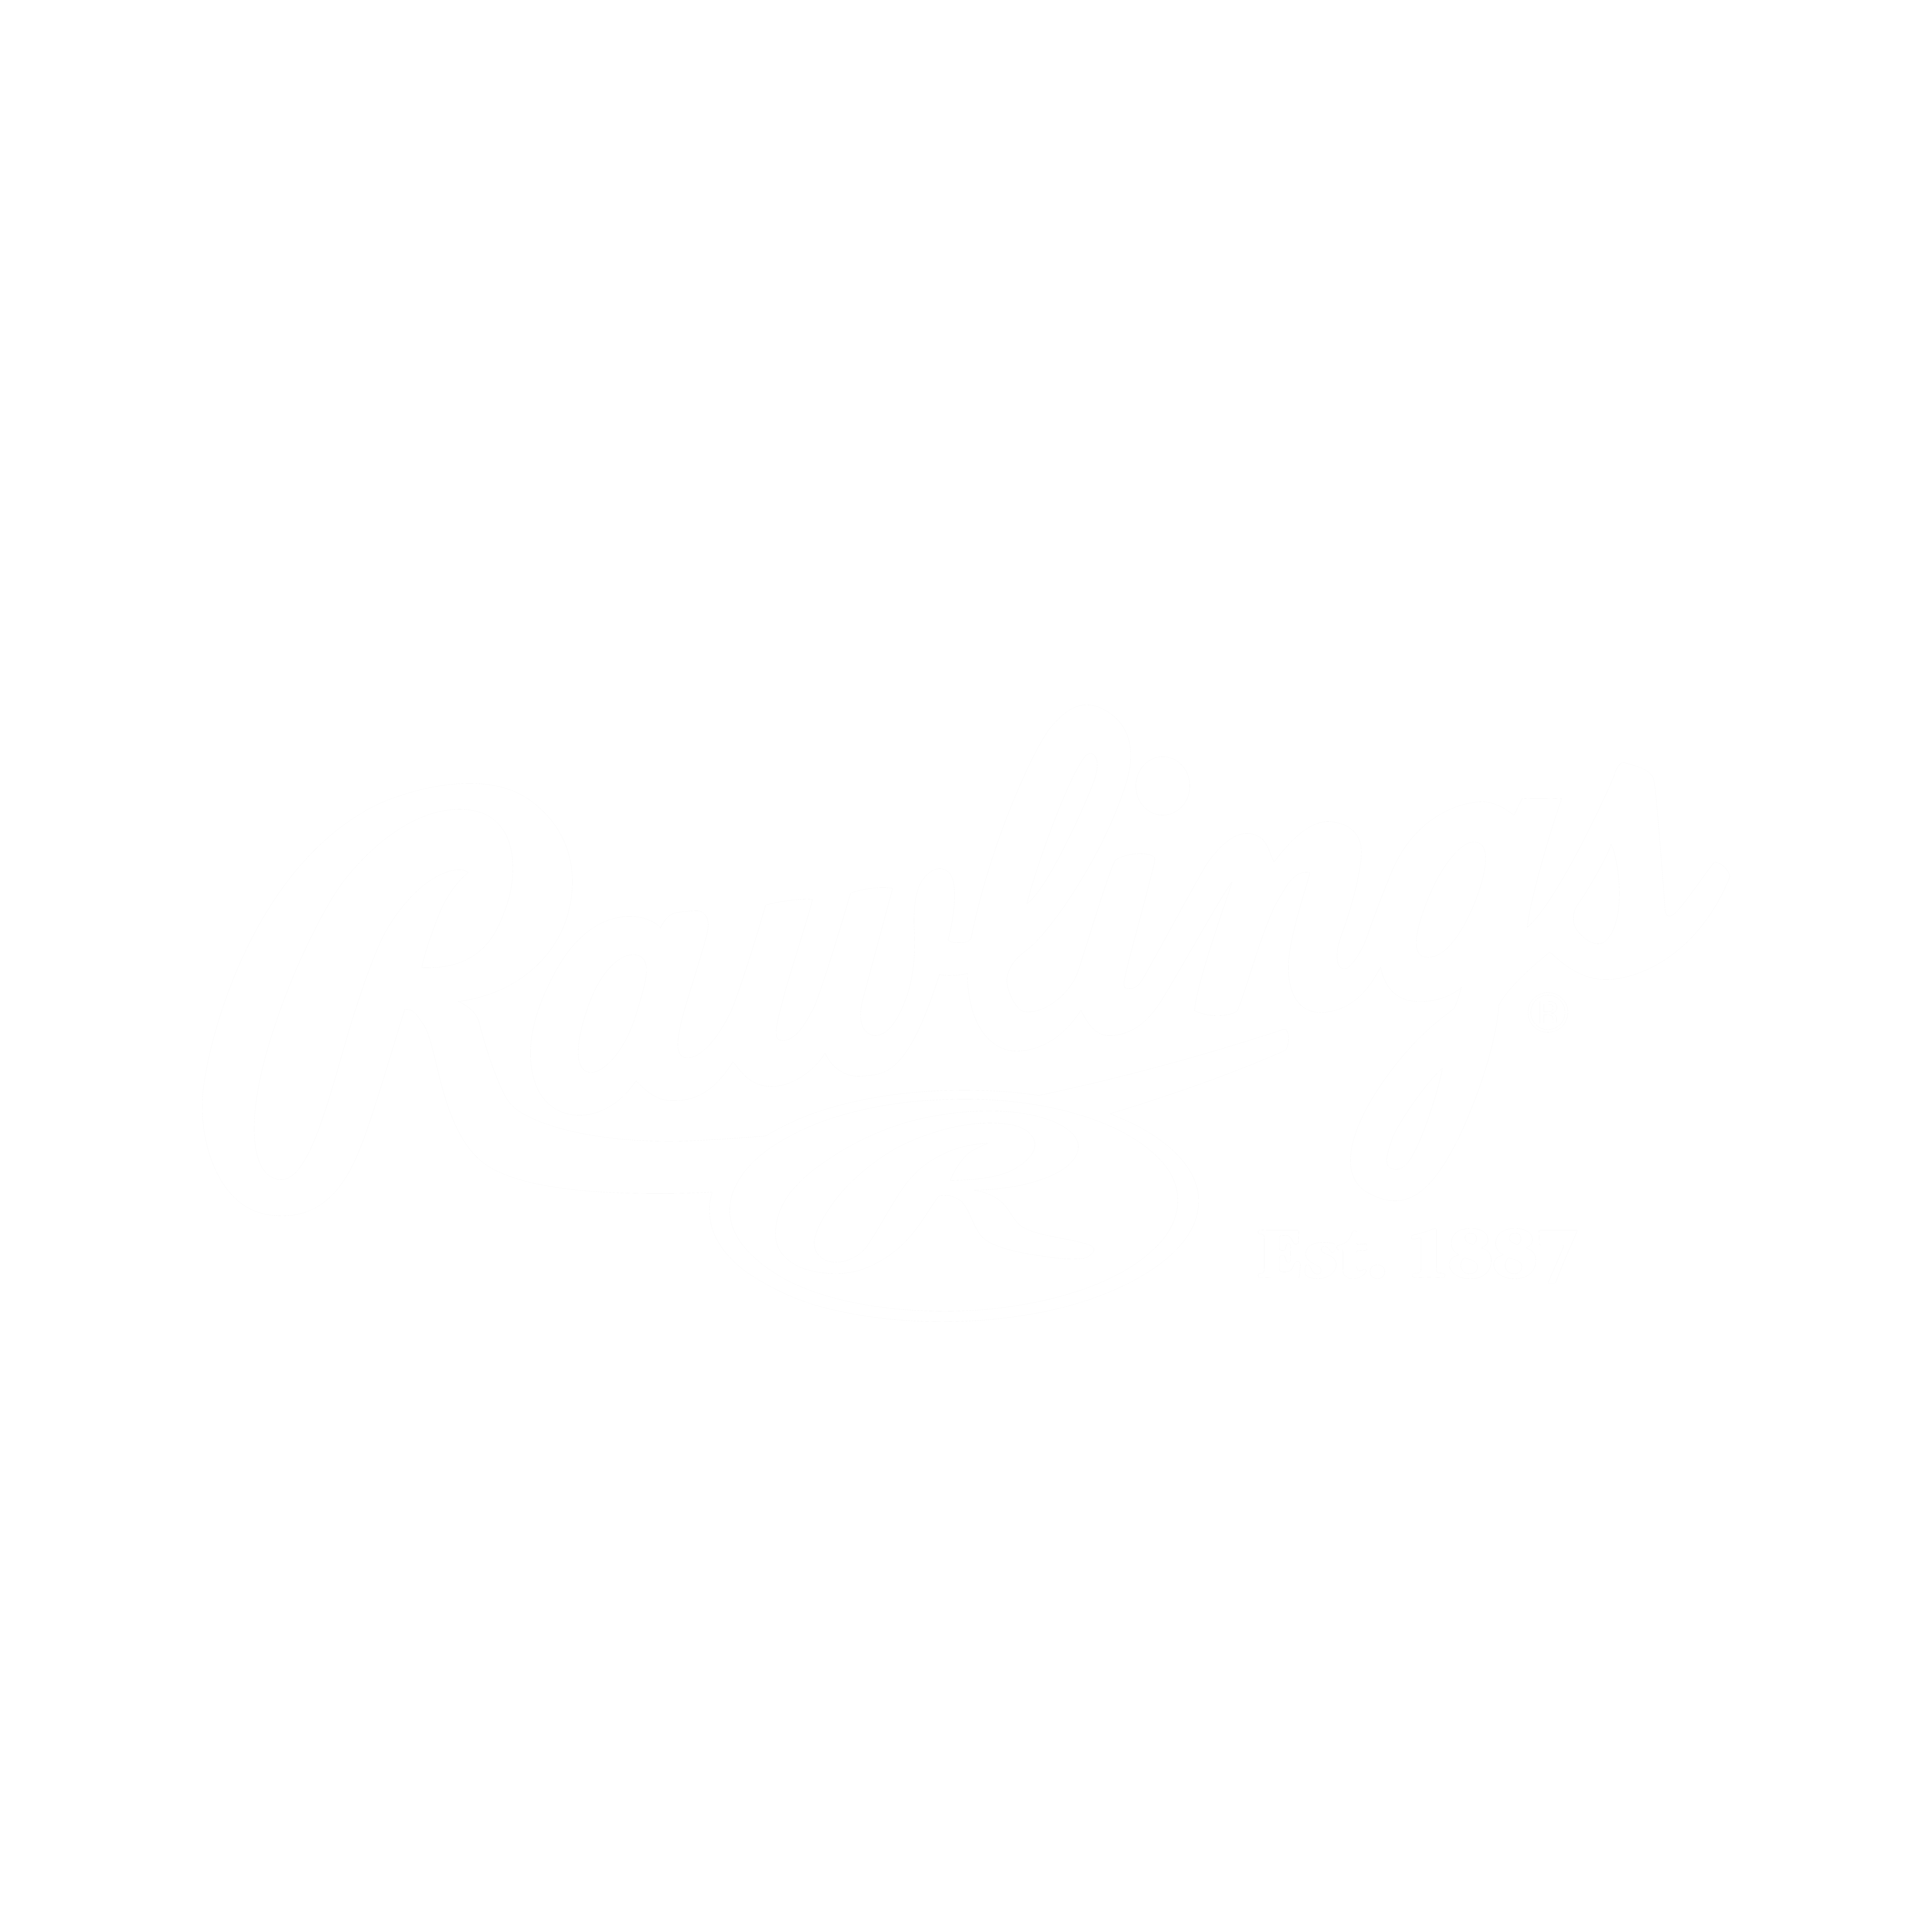 rawlings-3 copy